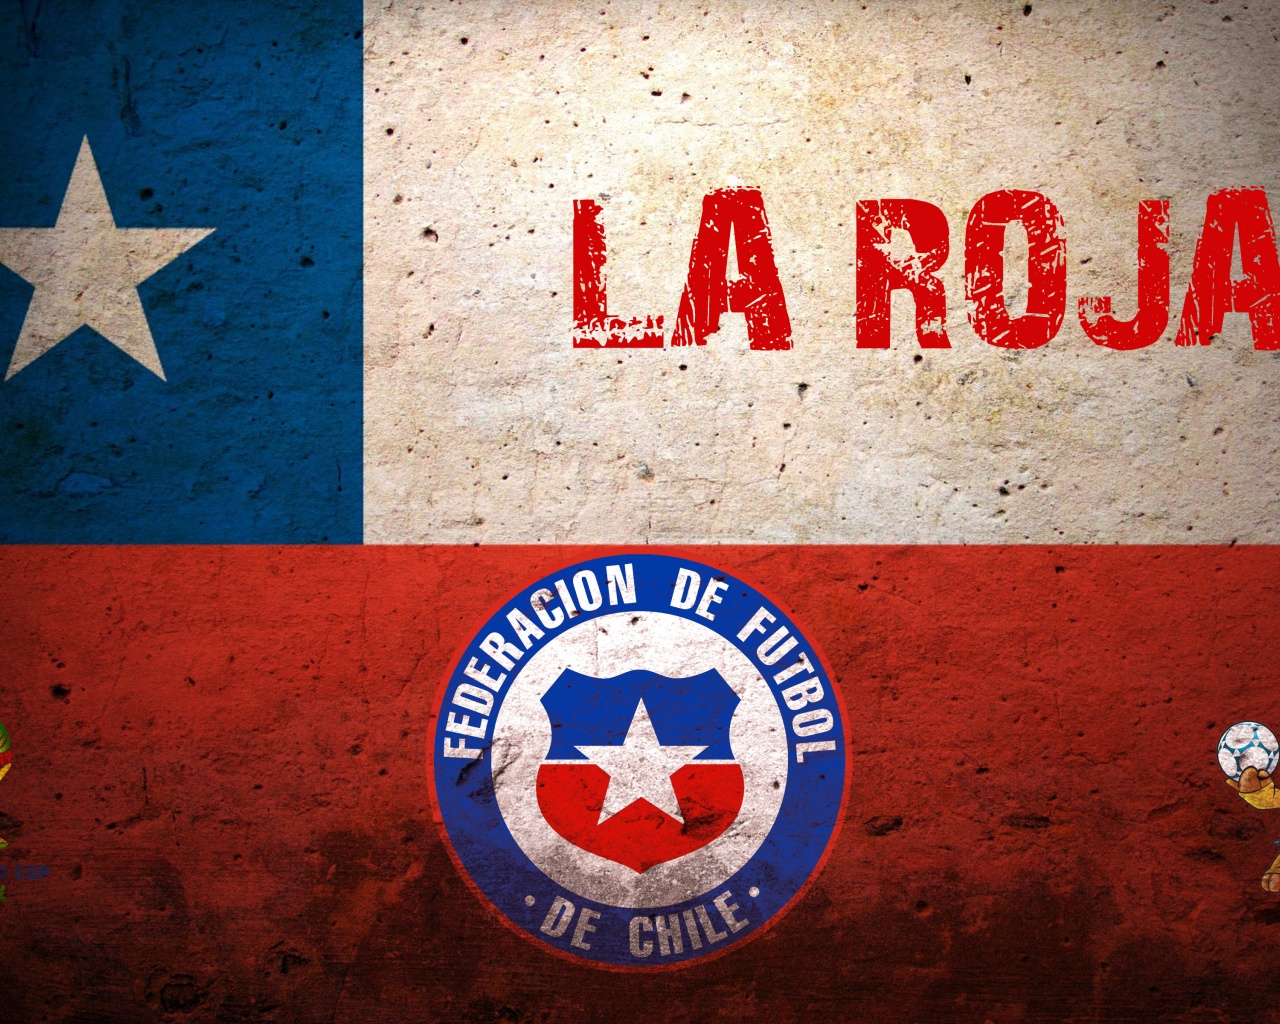 La Roja Chile Football Crest Logo